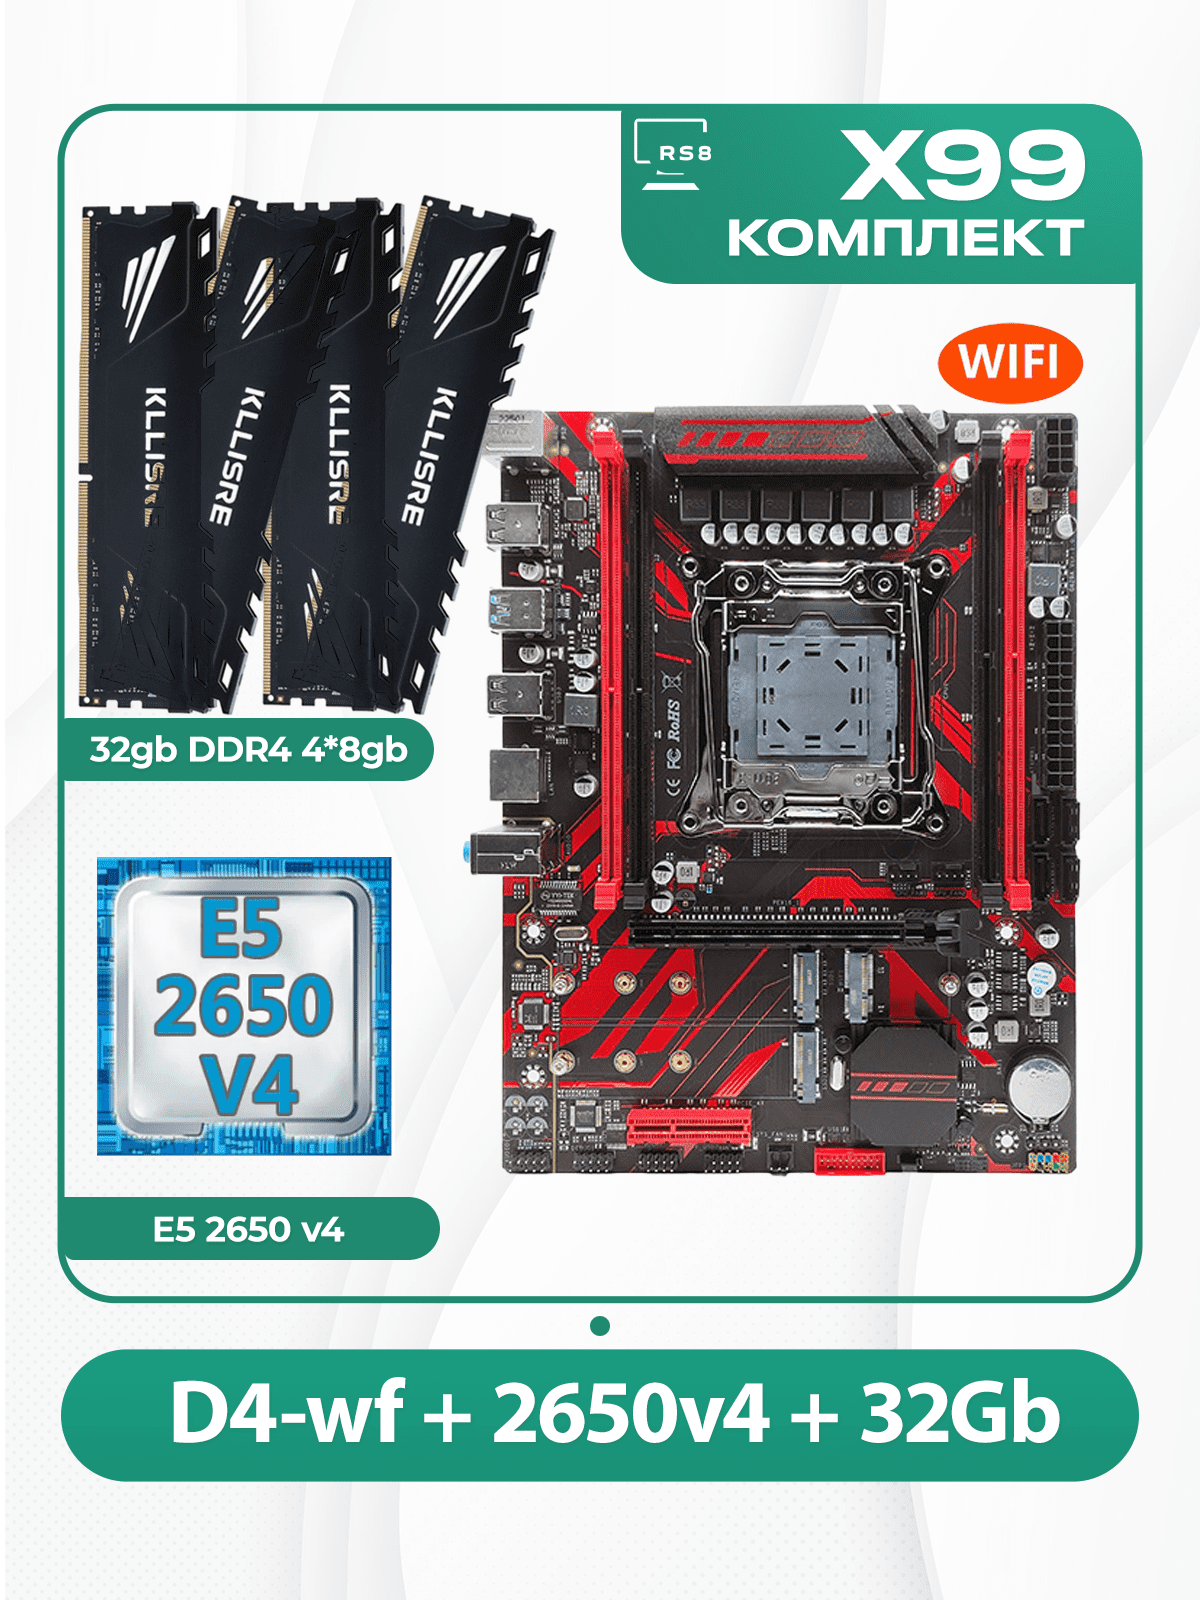 Комплект материнской платы X99: Atermiter D4-wf 2011v3 + Xeon E5 2650v4 + DDR4 32Гб Kllisre 2666Mhz 4x8Гб